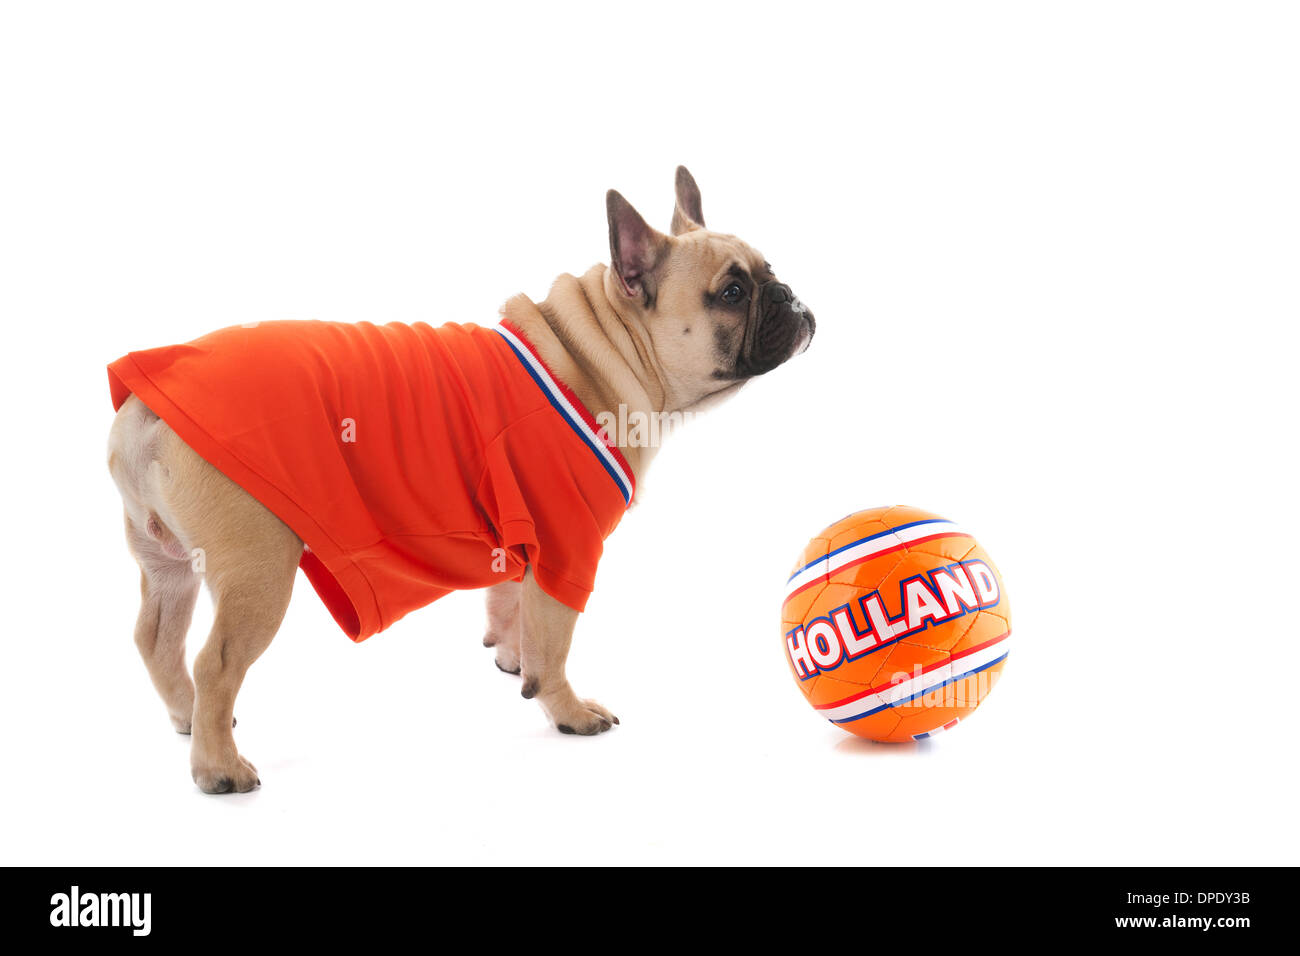 Niederländische Hund in orange Sport tragen als Fußball-fan Stockfoto